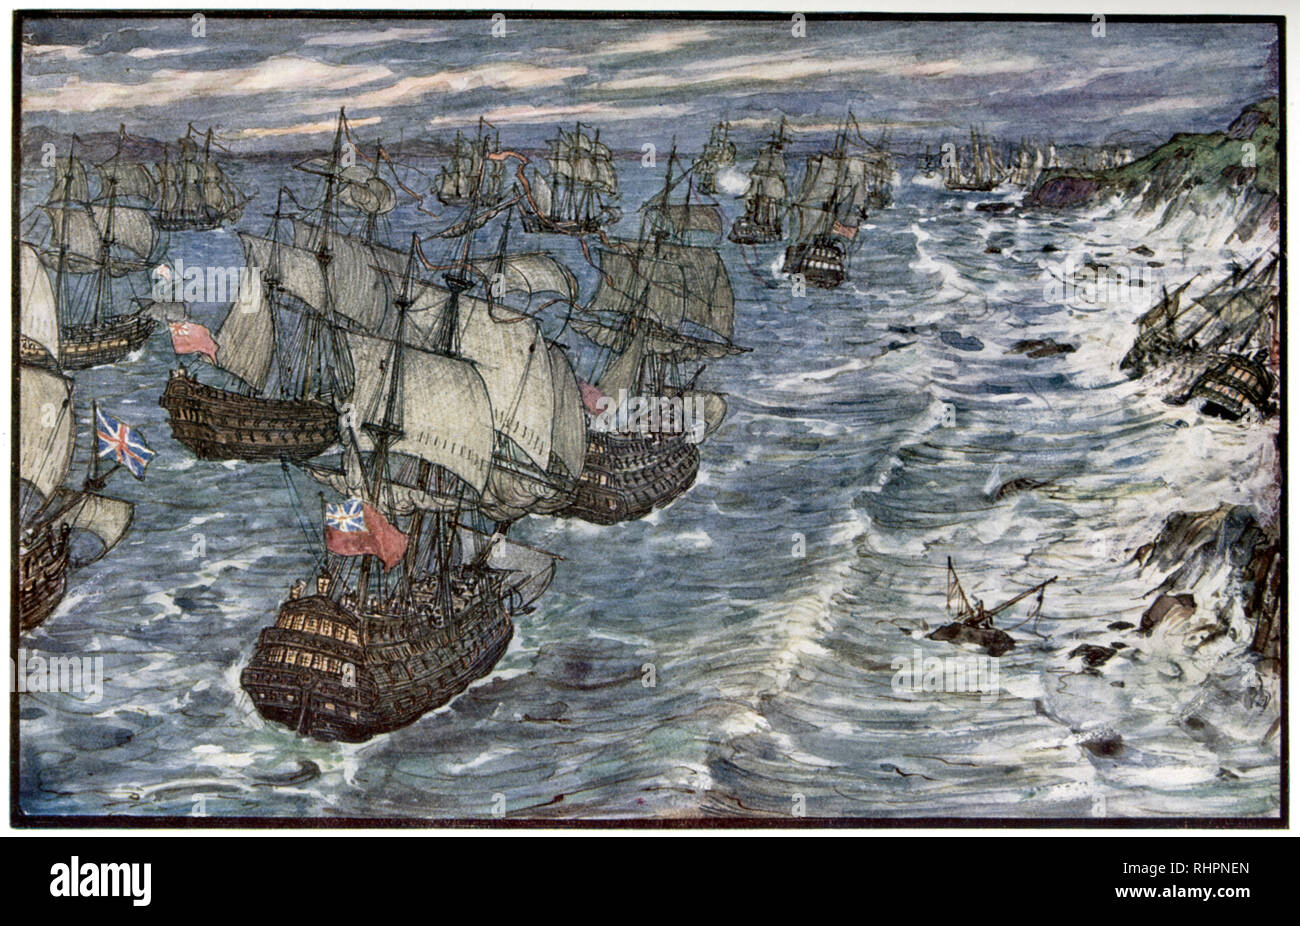 Baia di Quiberon, 1759. Di Henry Justice Ford (1860-1941). La Battaglia della Baia di Quiberon (Bataille des Cardinaux) fu un impegno navale decisivo combattuto il 20th novembre 1759 durante la guerra dei sette anni tra la Marina reale e la Marina francese. Foto Stock